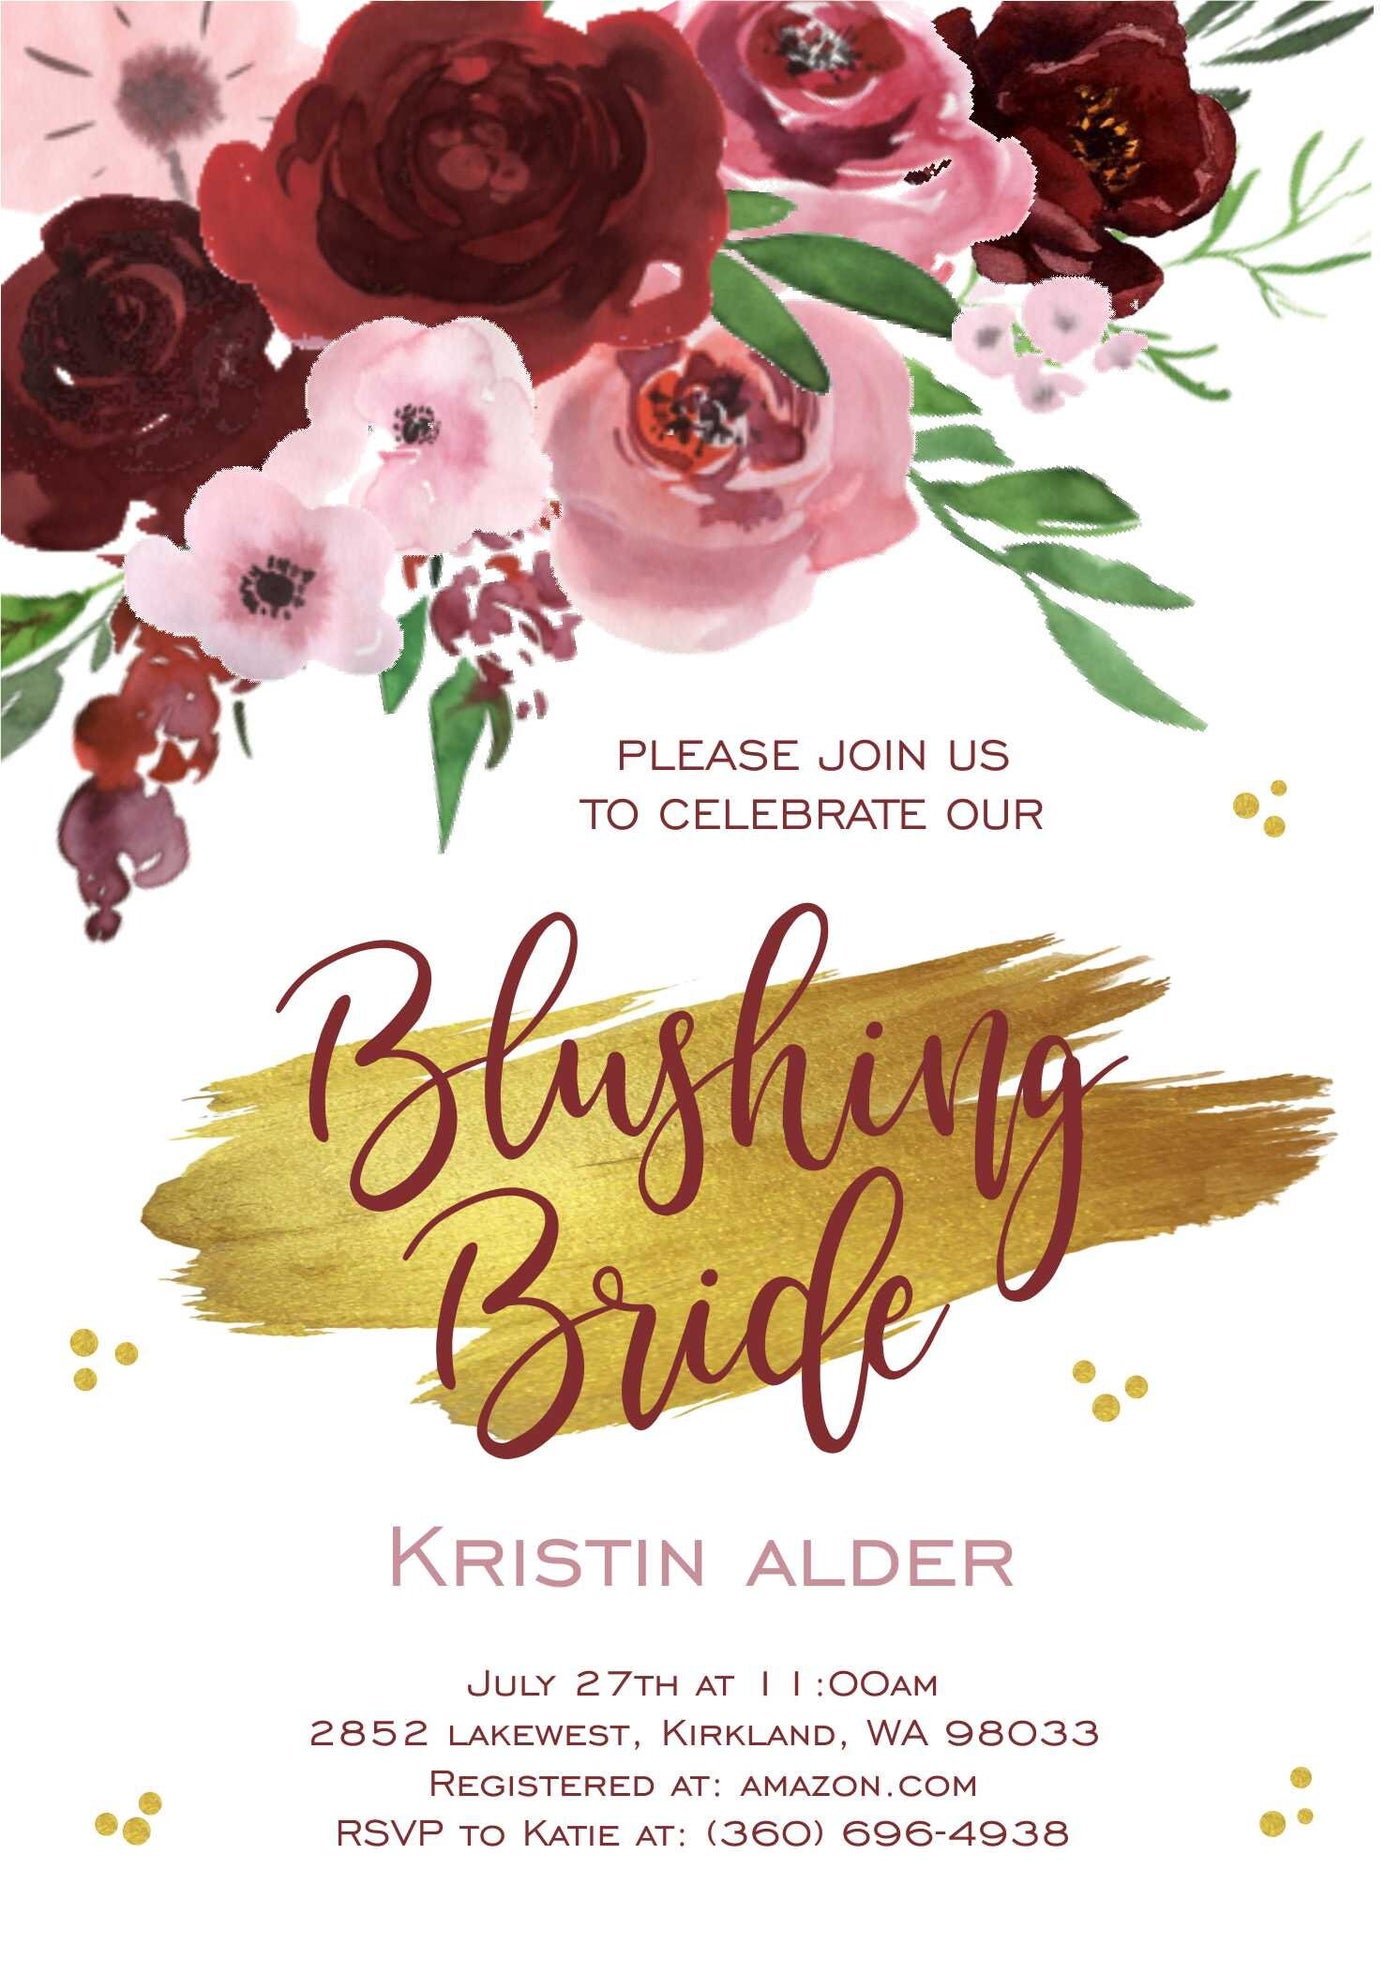 Floral Bridal Shower Invitation, Blush Bridal Shower Invite, Blush and Rose Gold Bridal Shower, Blushing Bride, Bridal Shower Brunch, Pink